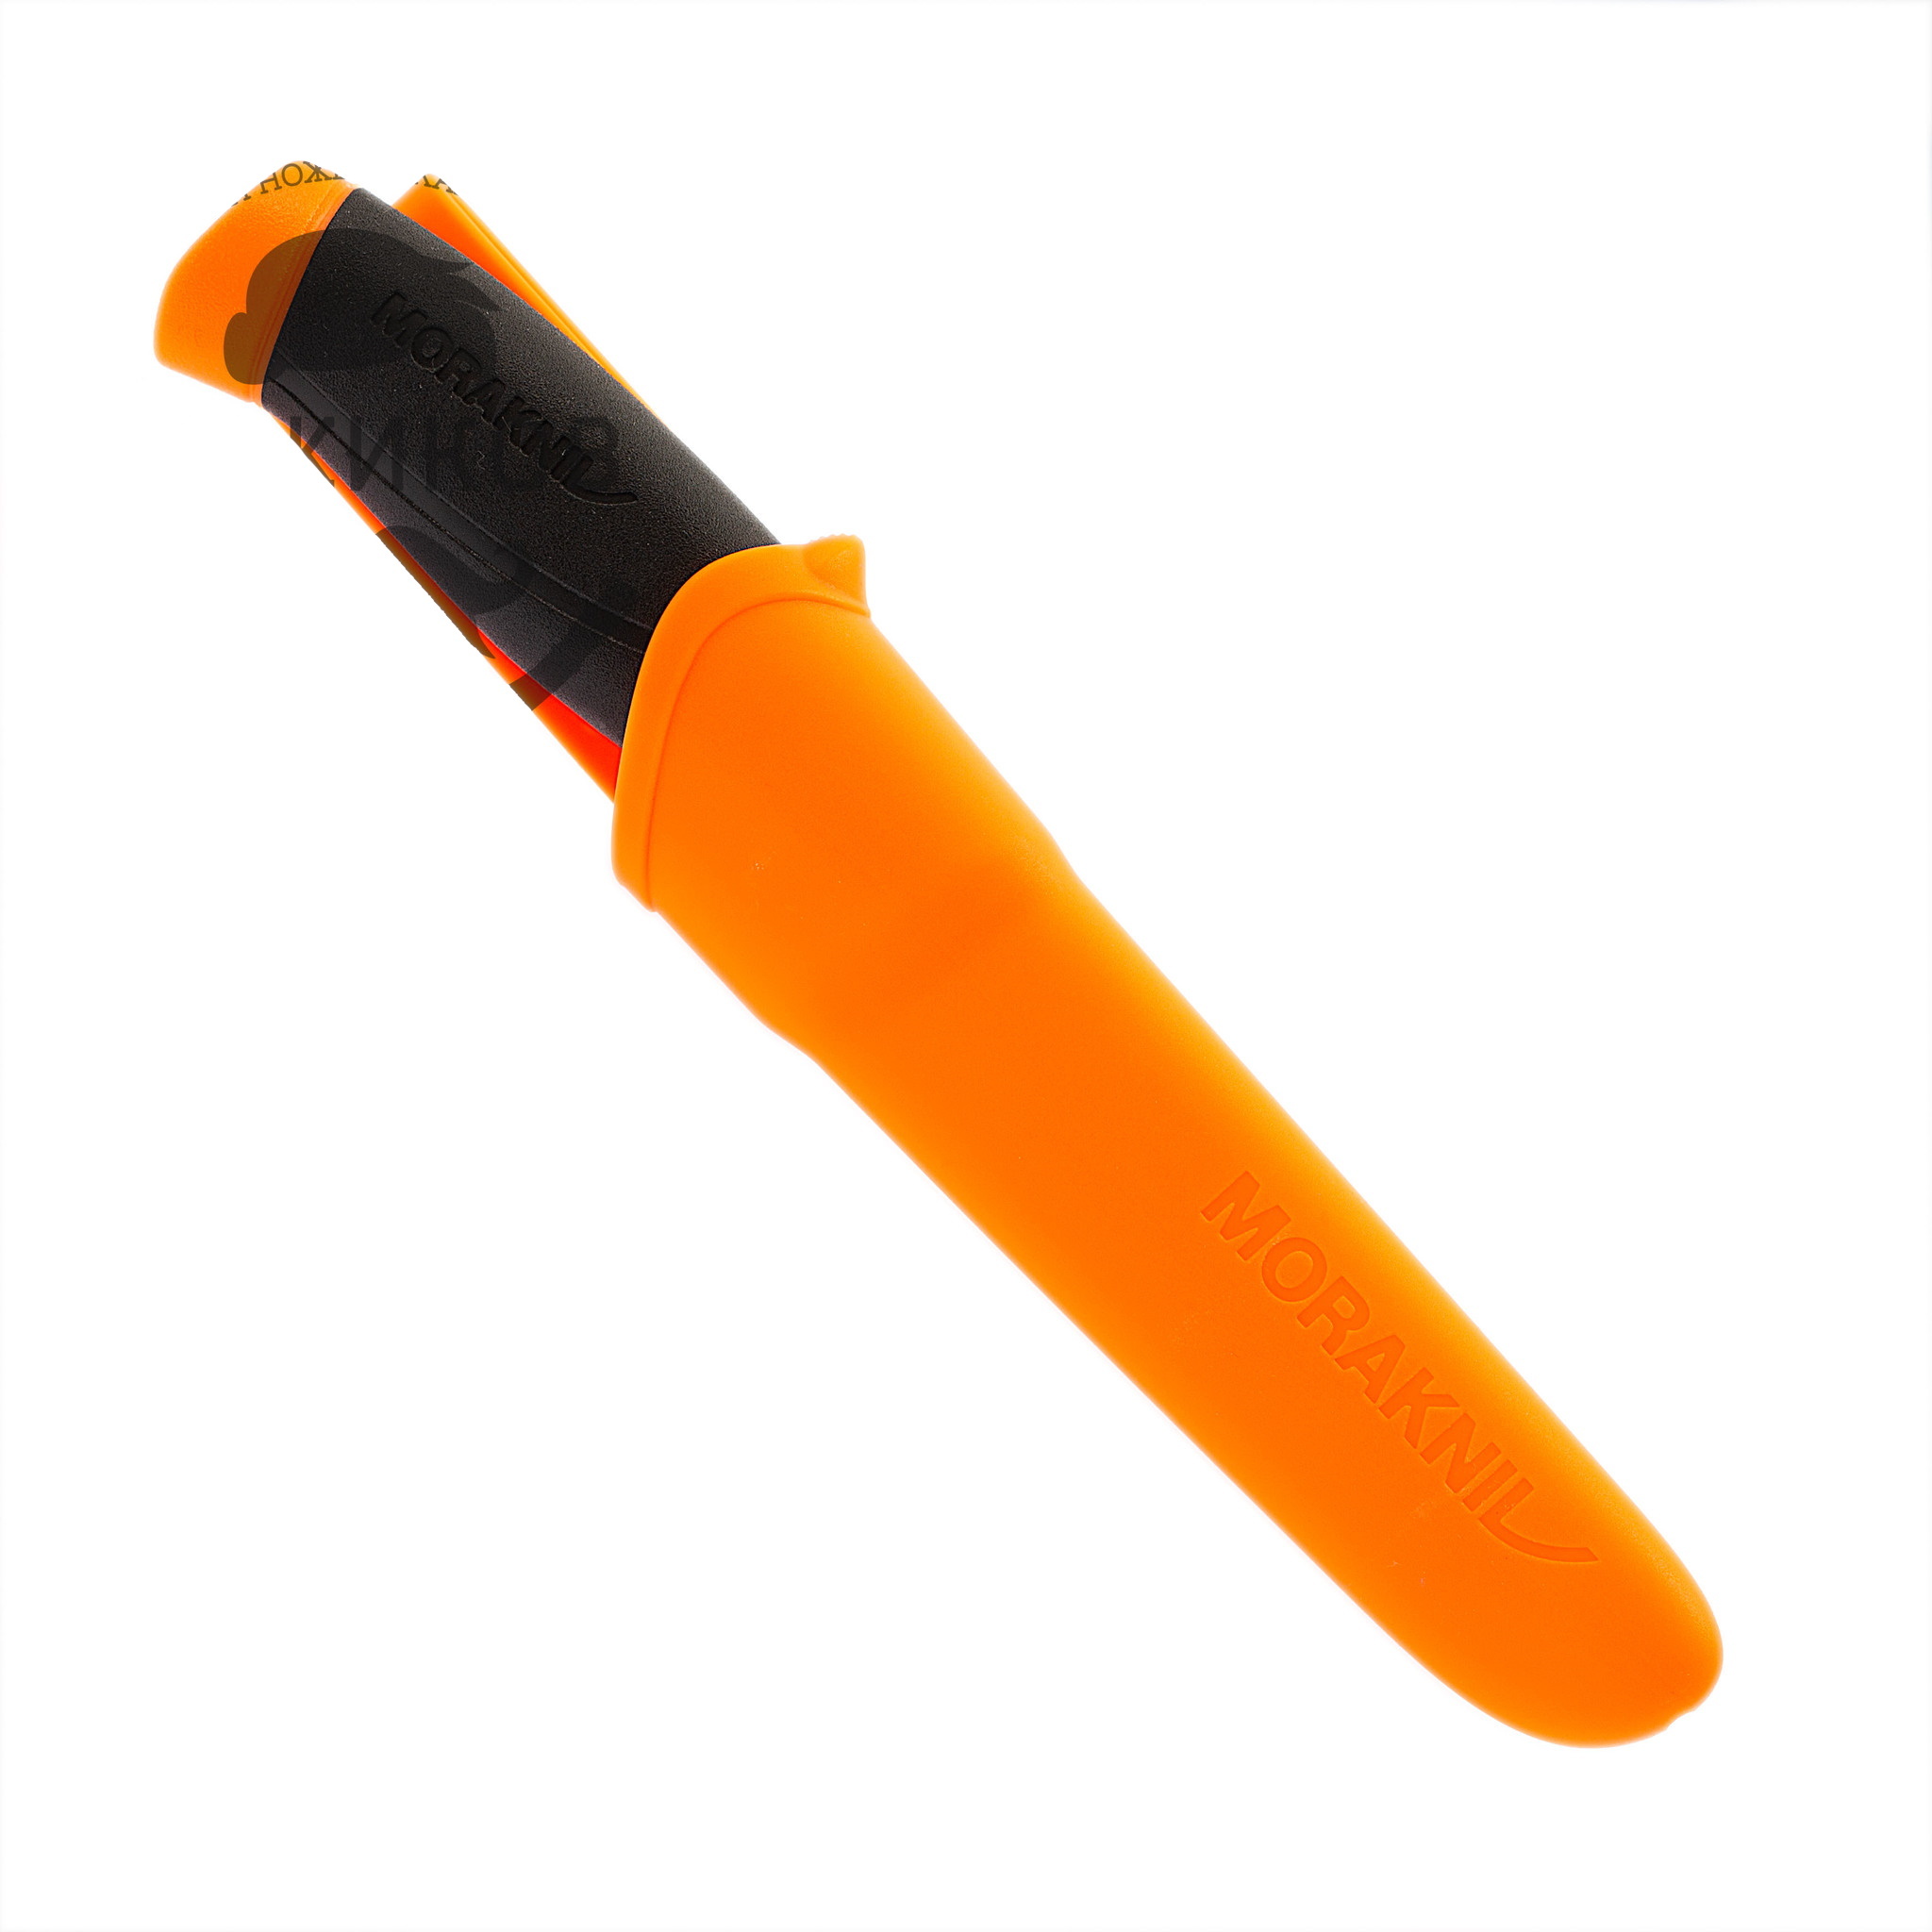 Нож с фиксированным лезвием Morakniv Companion Orange, сталь Sandvik 12C27, рукоять резина/пластик, оранжевый - фото 3